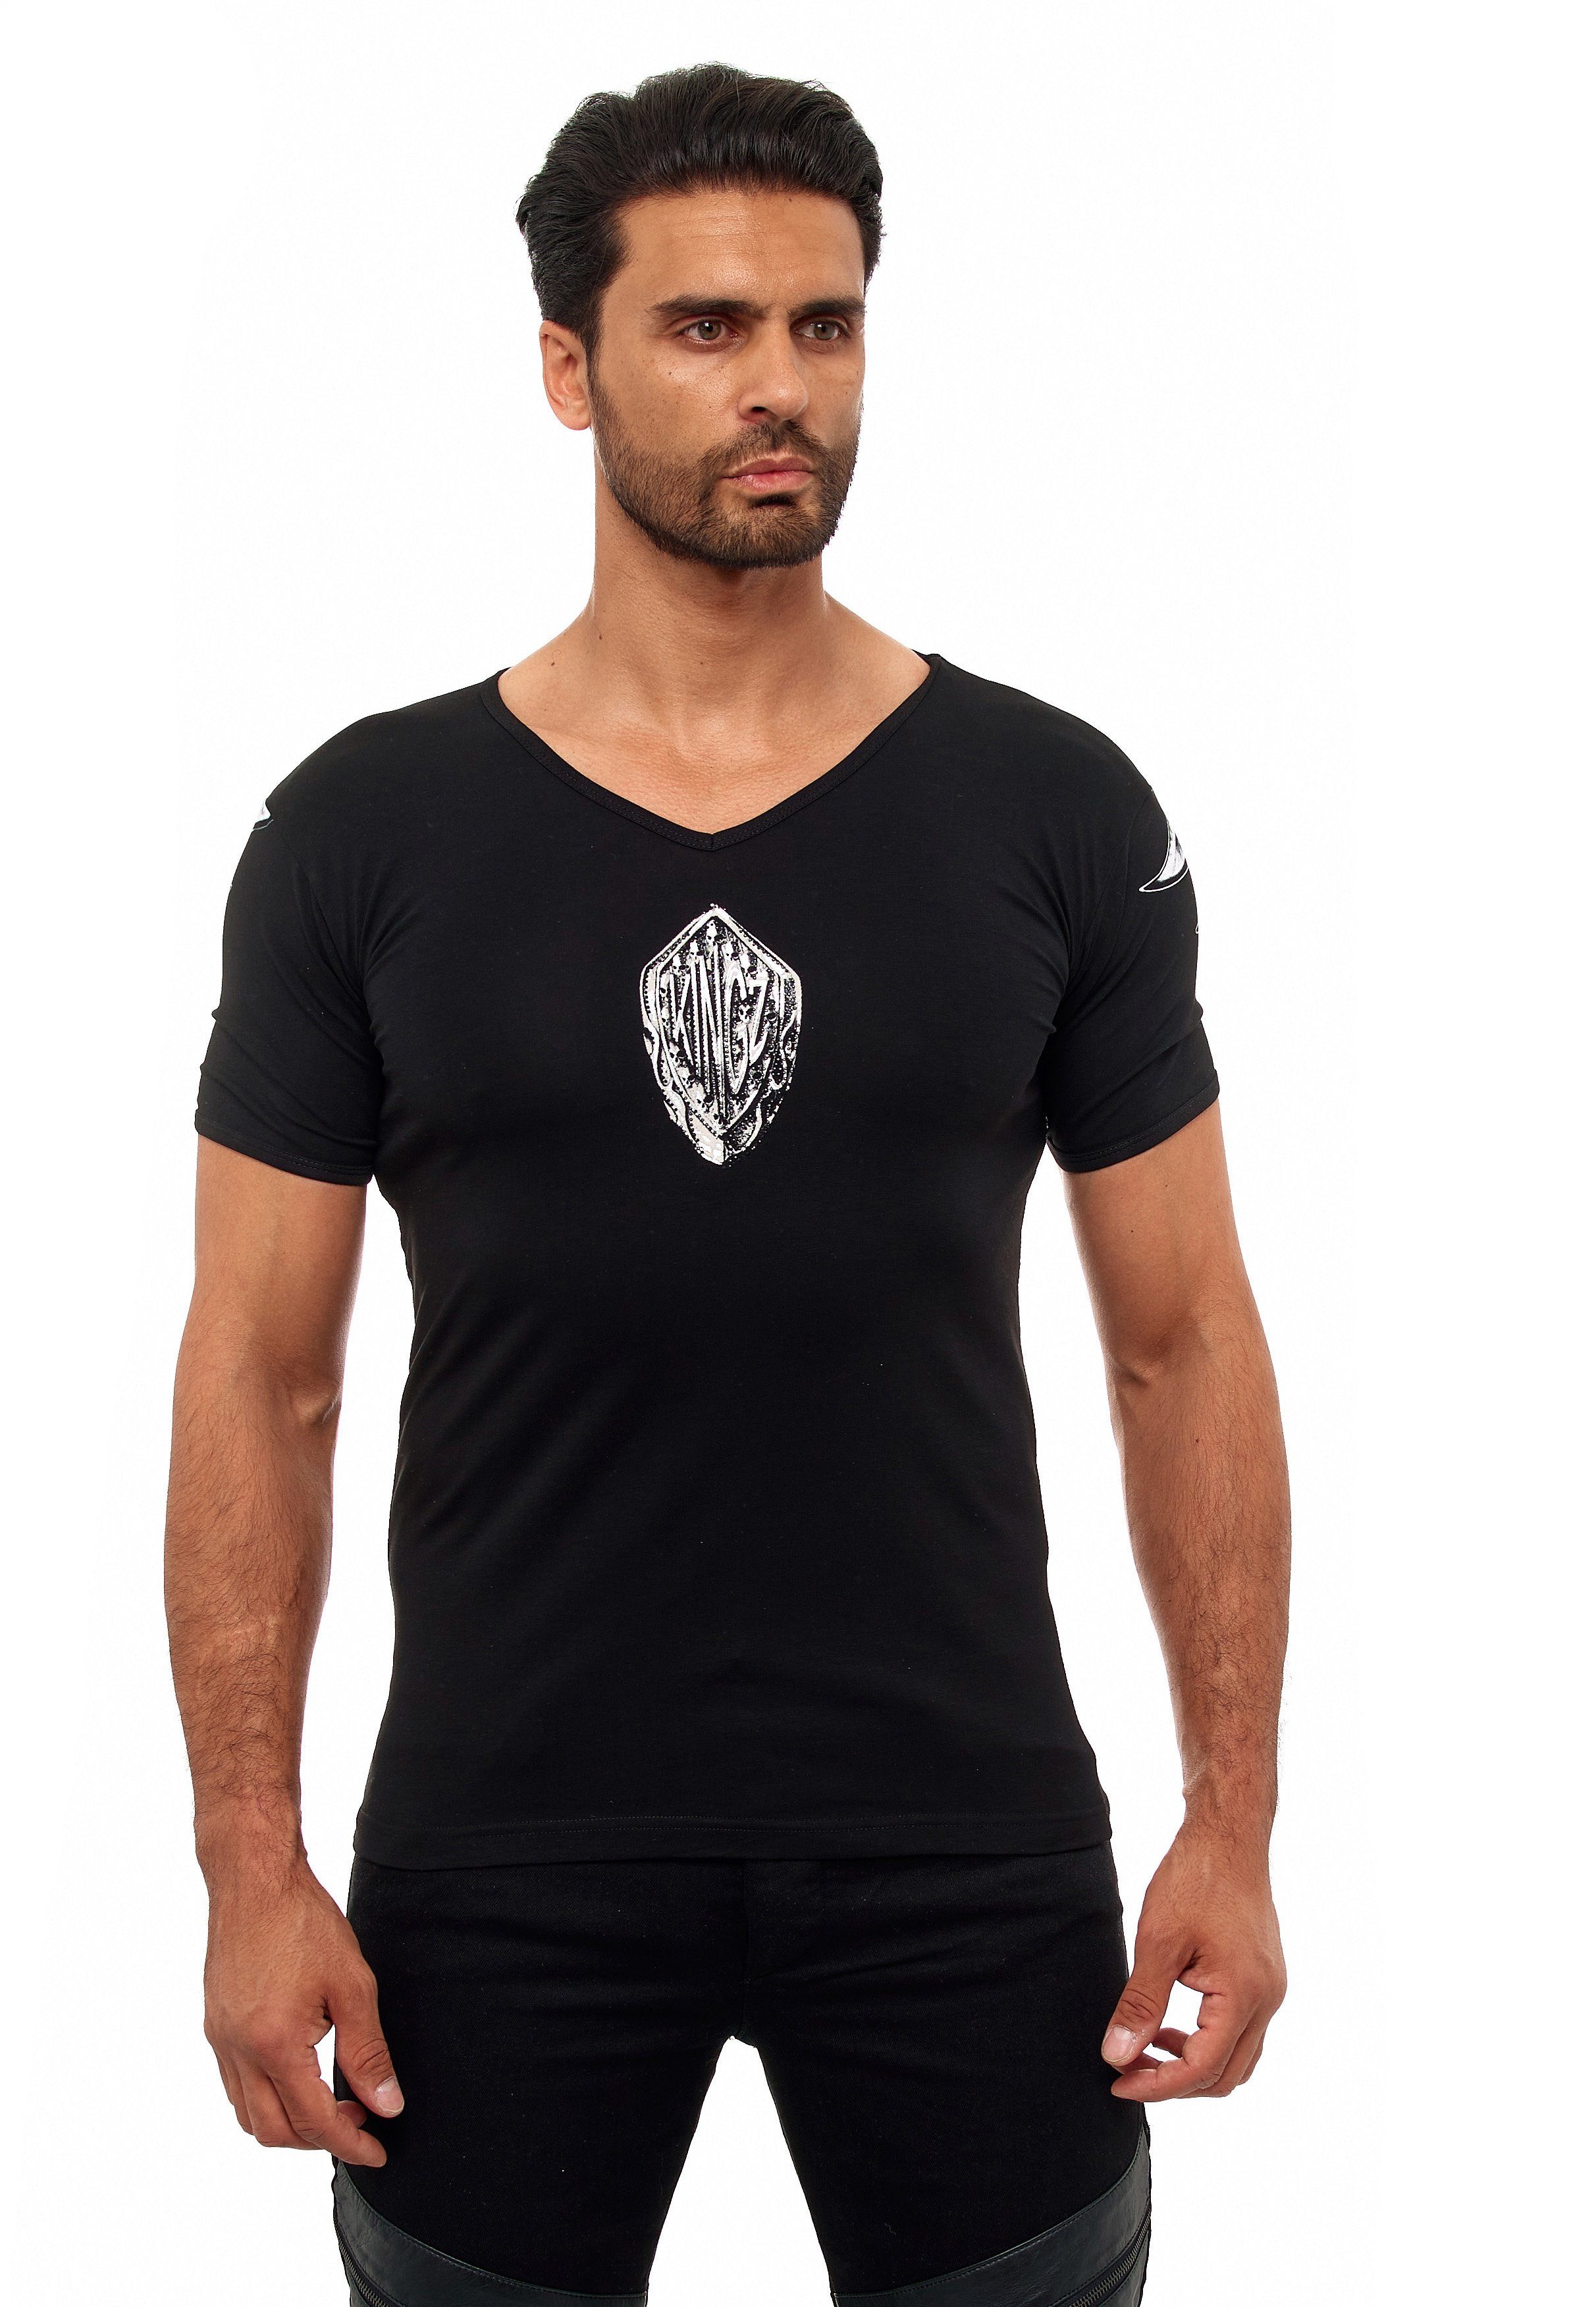 KINGZ T-Shirt mit ausgefallenem Adler-Print schwarz-silberfarben